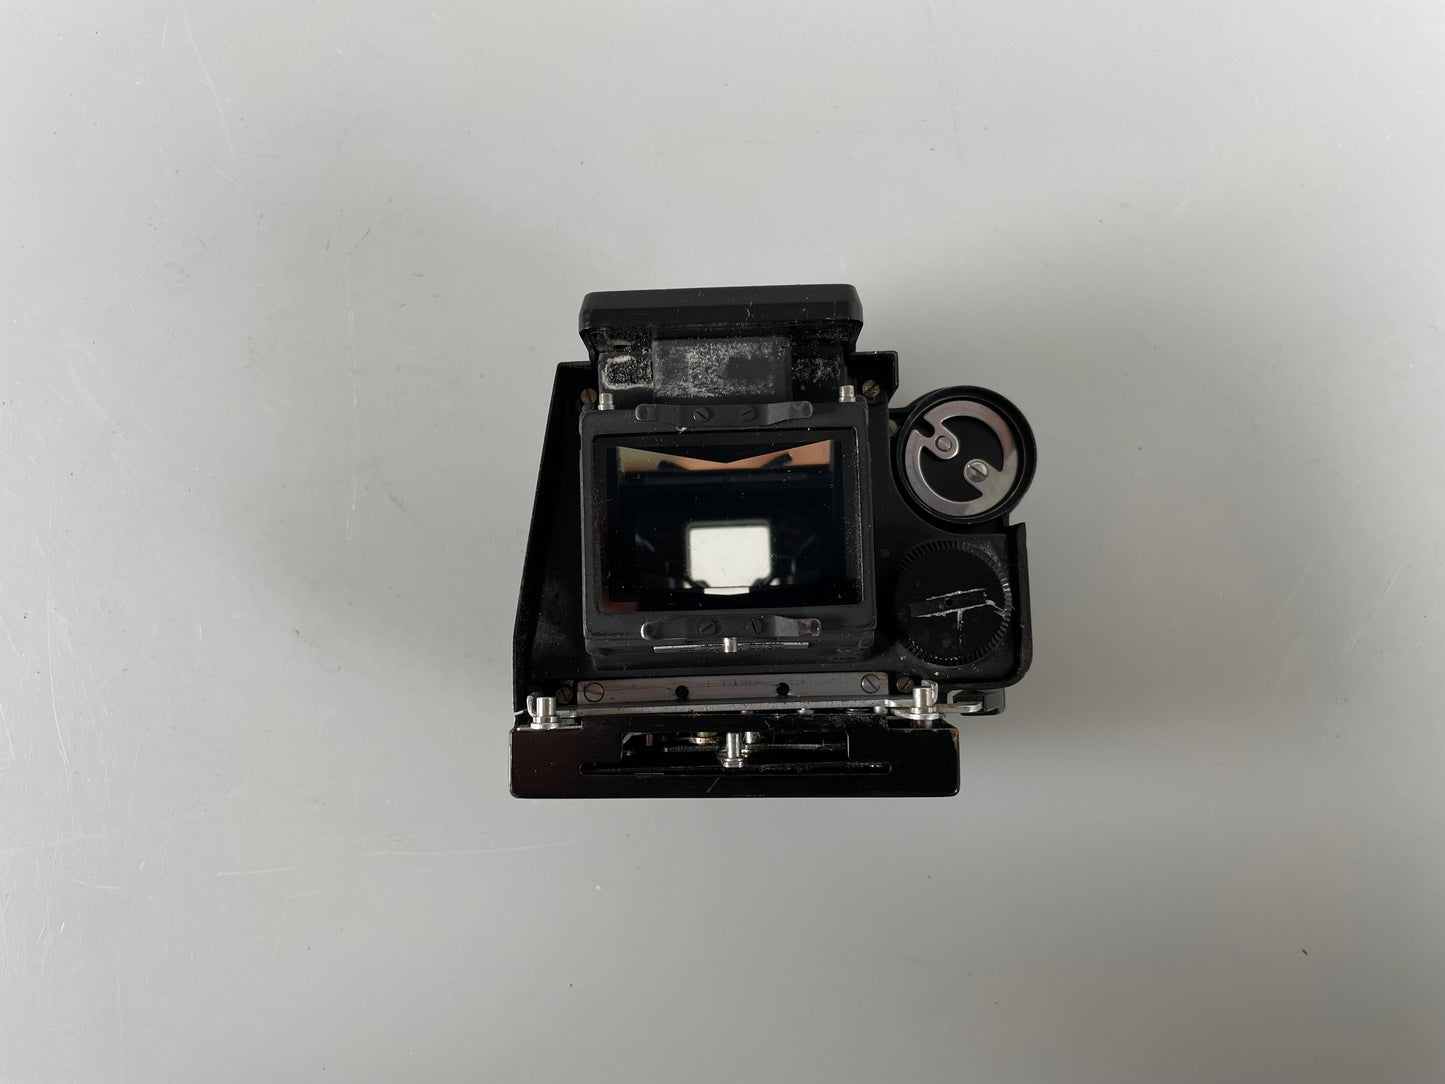 Nikon Black FTN meter prism finder for Nikon F camera